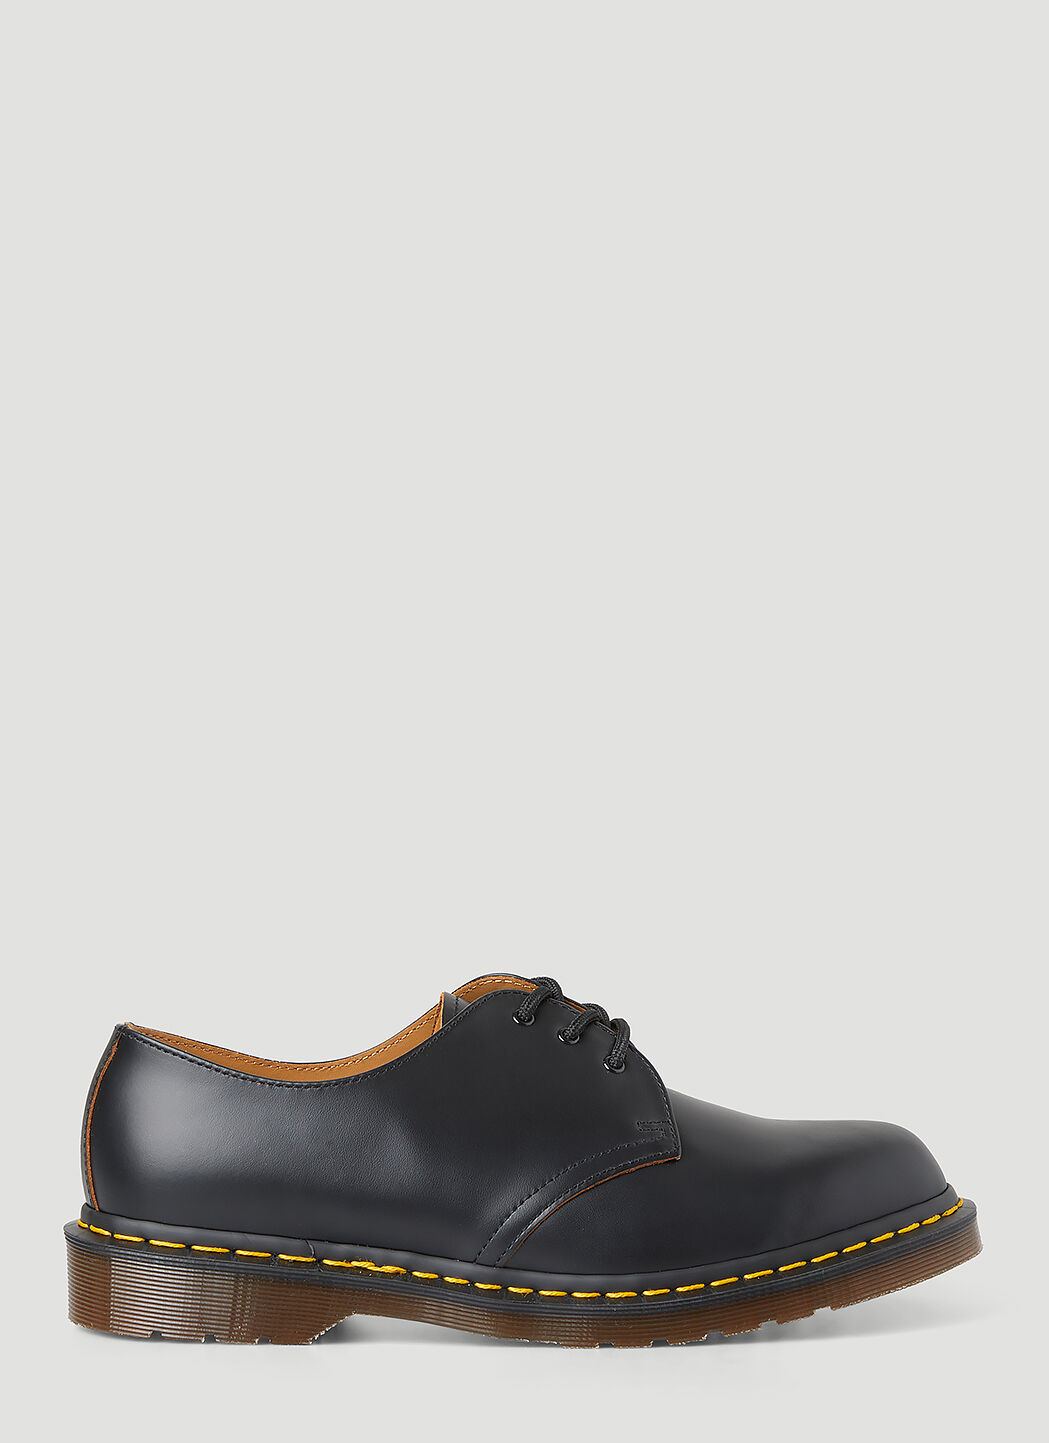 Vivienne Westwood Vintage 1461 Tech Shoes Black vvw0255059